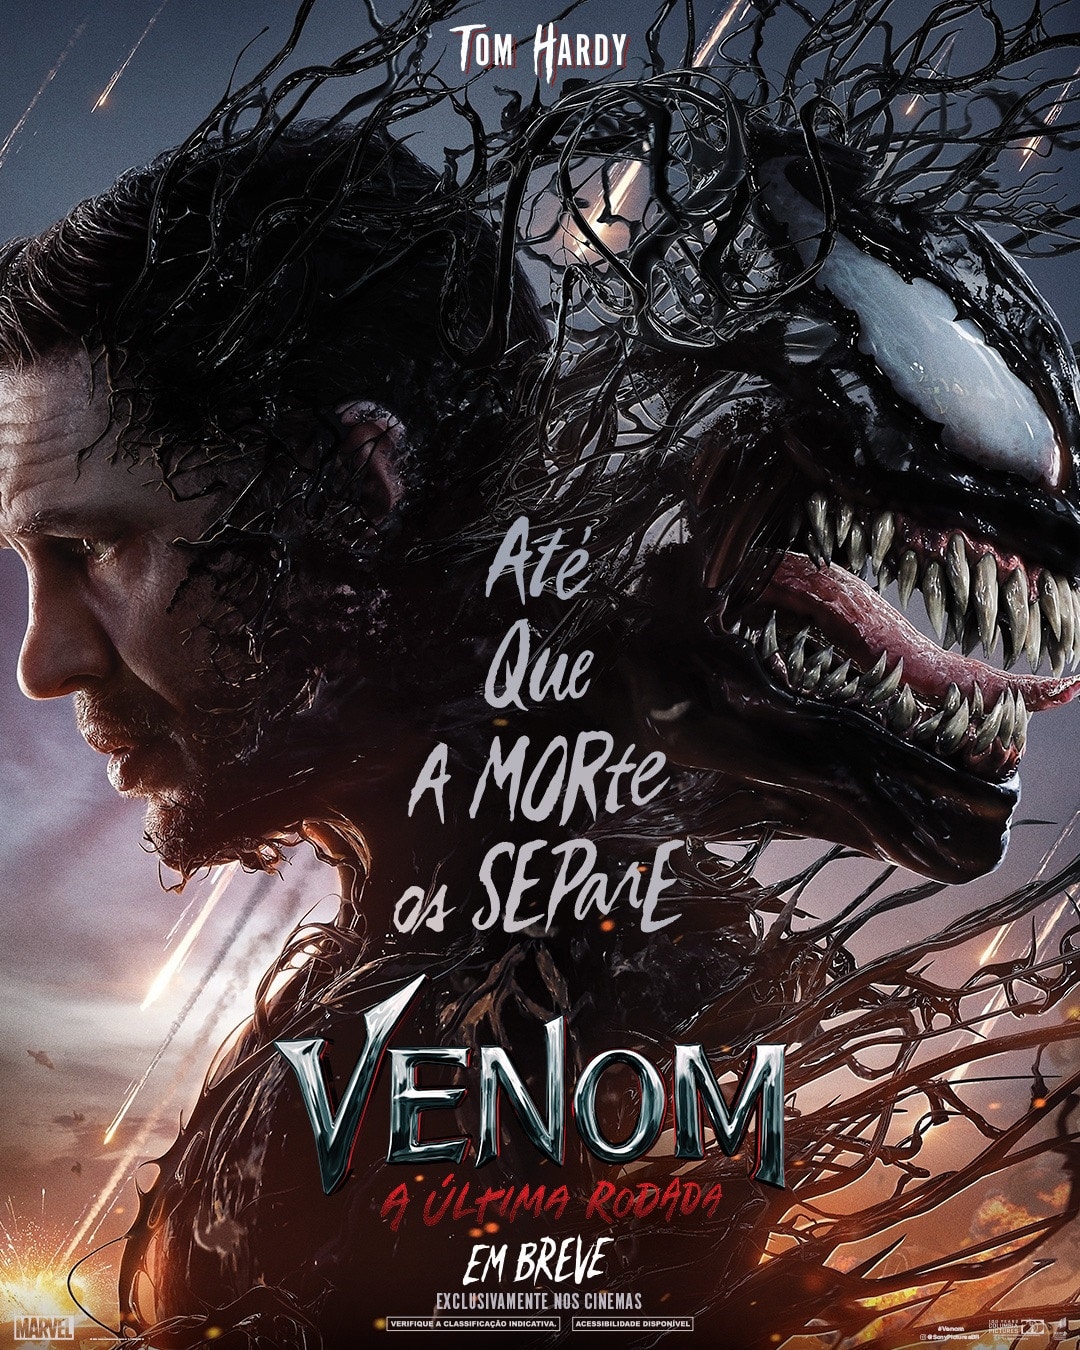 Venom-A-Ultima-Rodada-Poster Venom: A Última Rodada | Trailer mostra confrontos épicos e novos inimigos